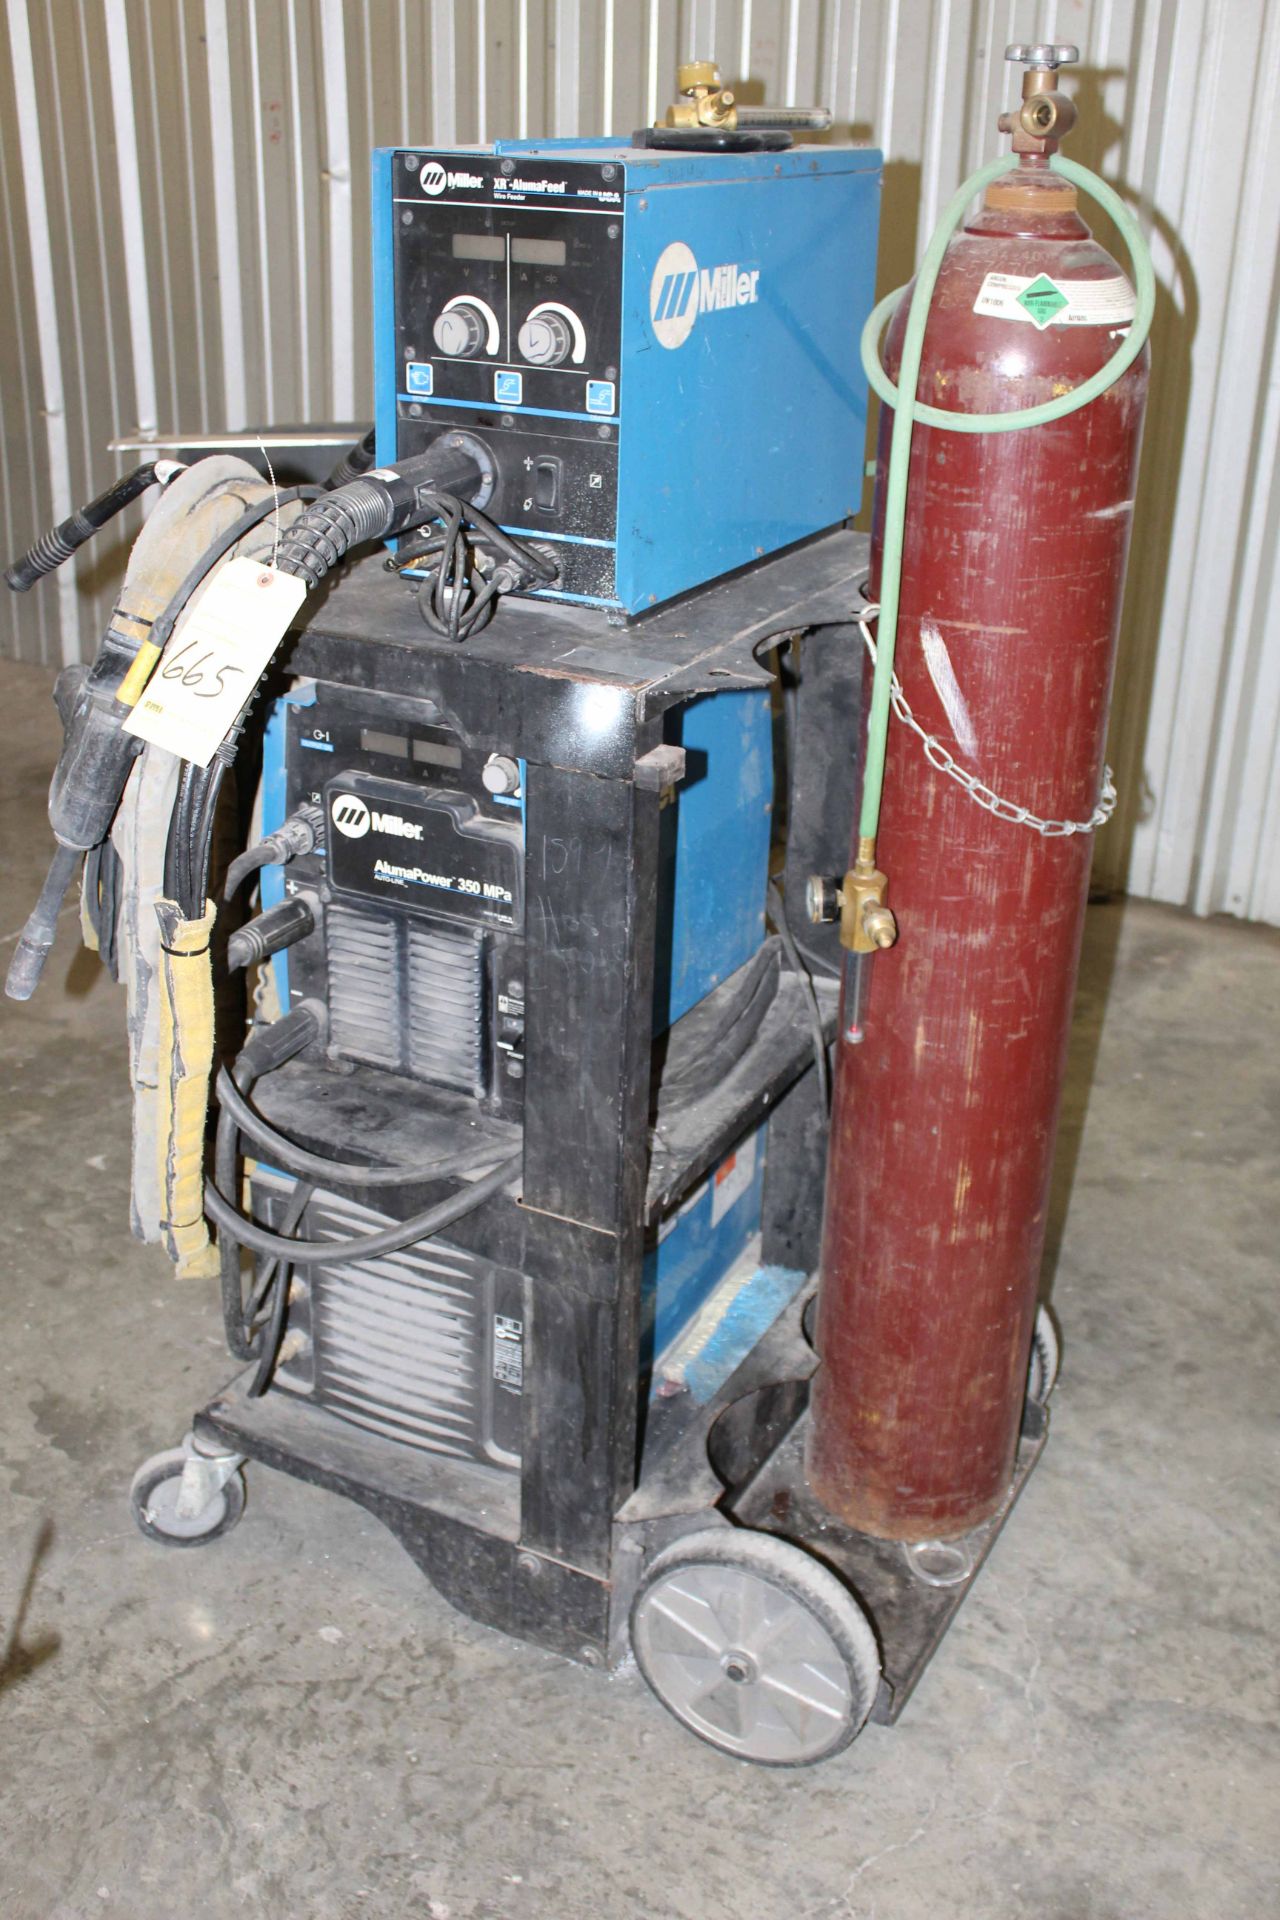 WELDING MACHINE, MILLER ALUMAPOWER 350MPA, new 2012, Miller XR-AlumaFeed wire feeder, Coolmate